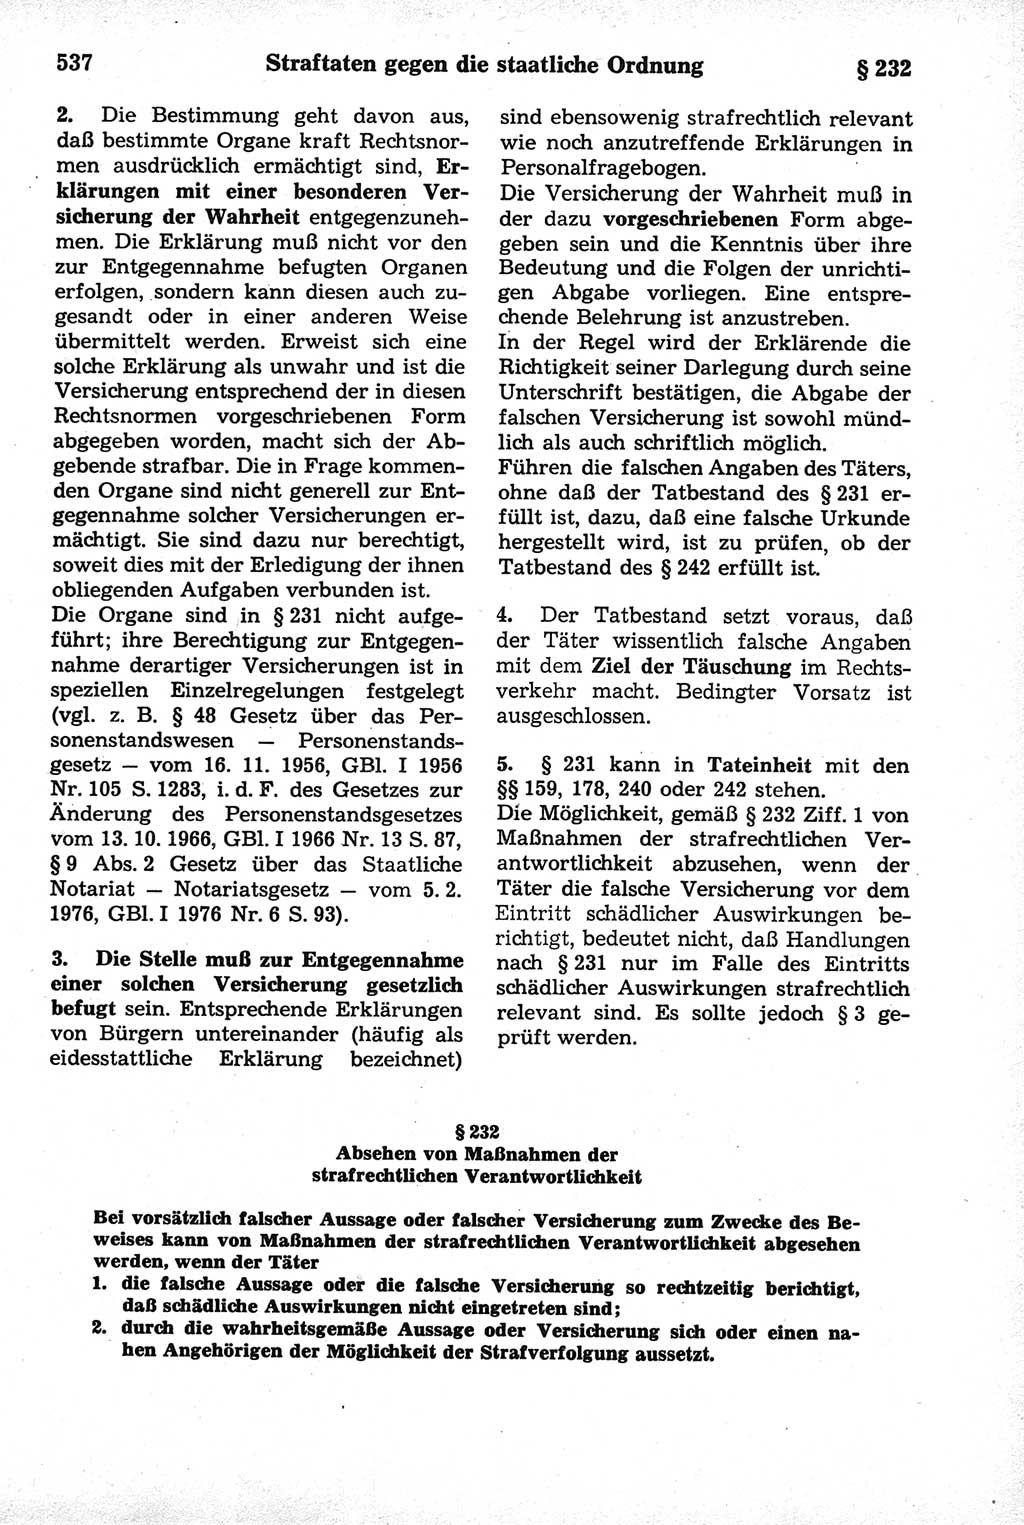 Strafrecht der Deutschen Demokratischen Republik (DDR), Kommentar zum Strafgesetzbuch (StGB) 1981, Seite 537 (Strafr. DDR Komm. StGB 1981, S. 537)